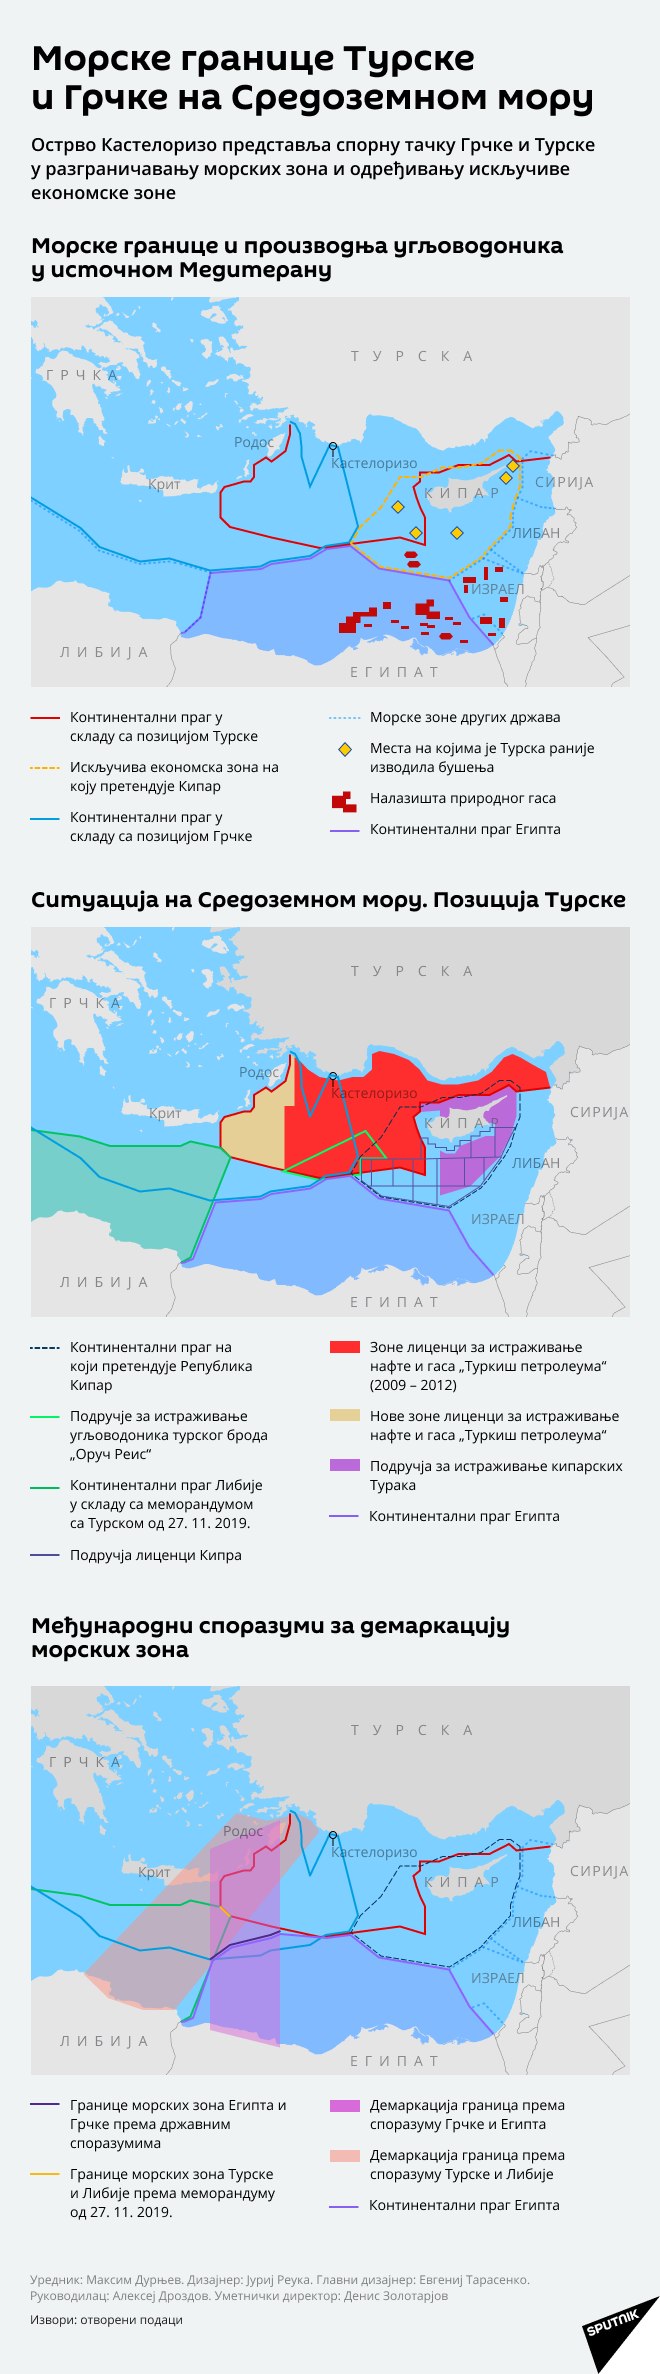 Морске границе Турске и Грчке на Средоземном мору ИСПРАВЉЕНО - Sputnik Србија